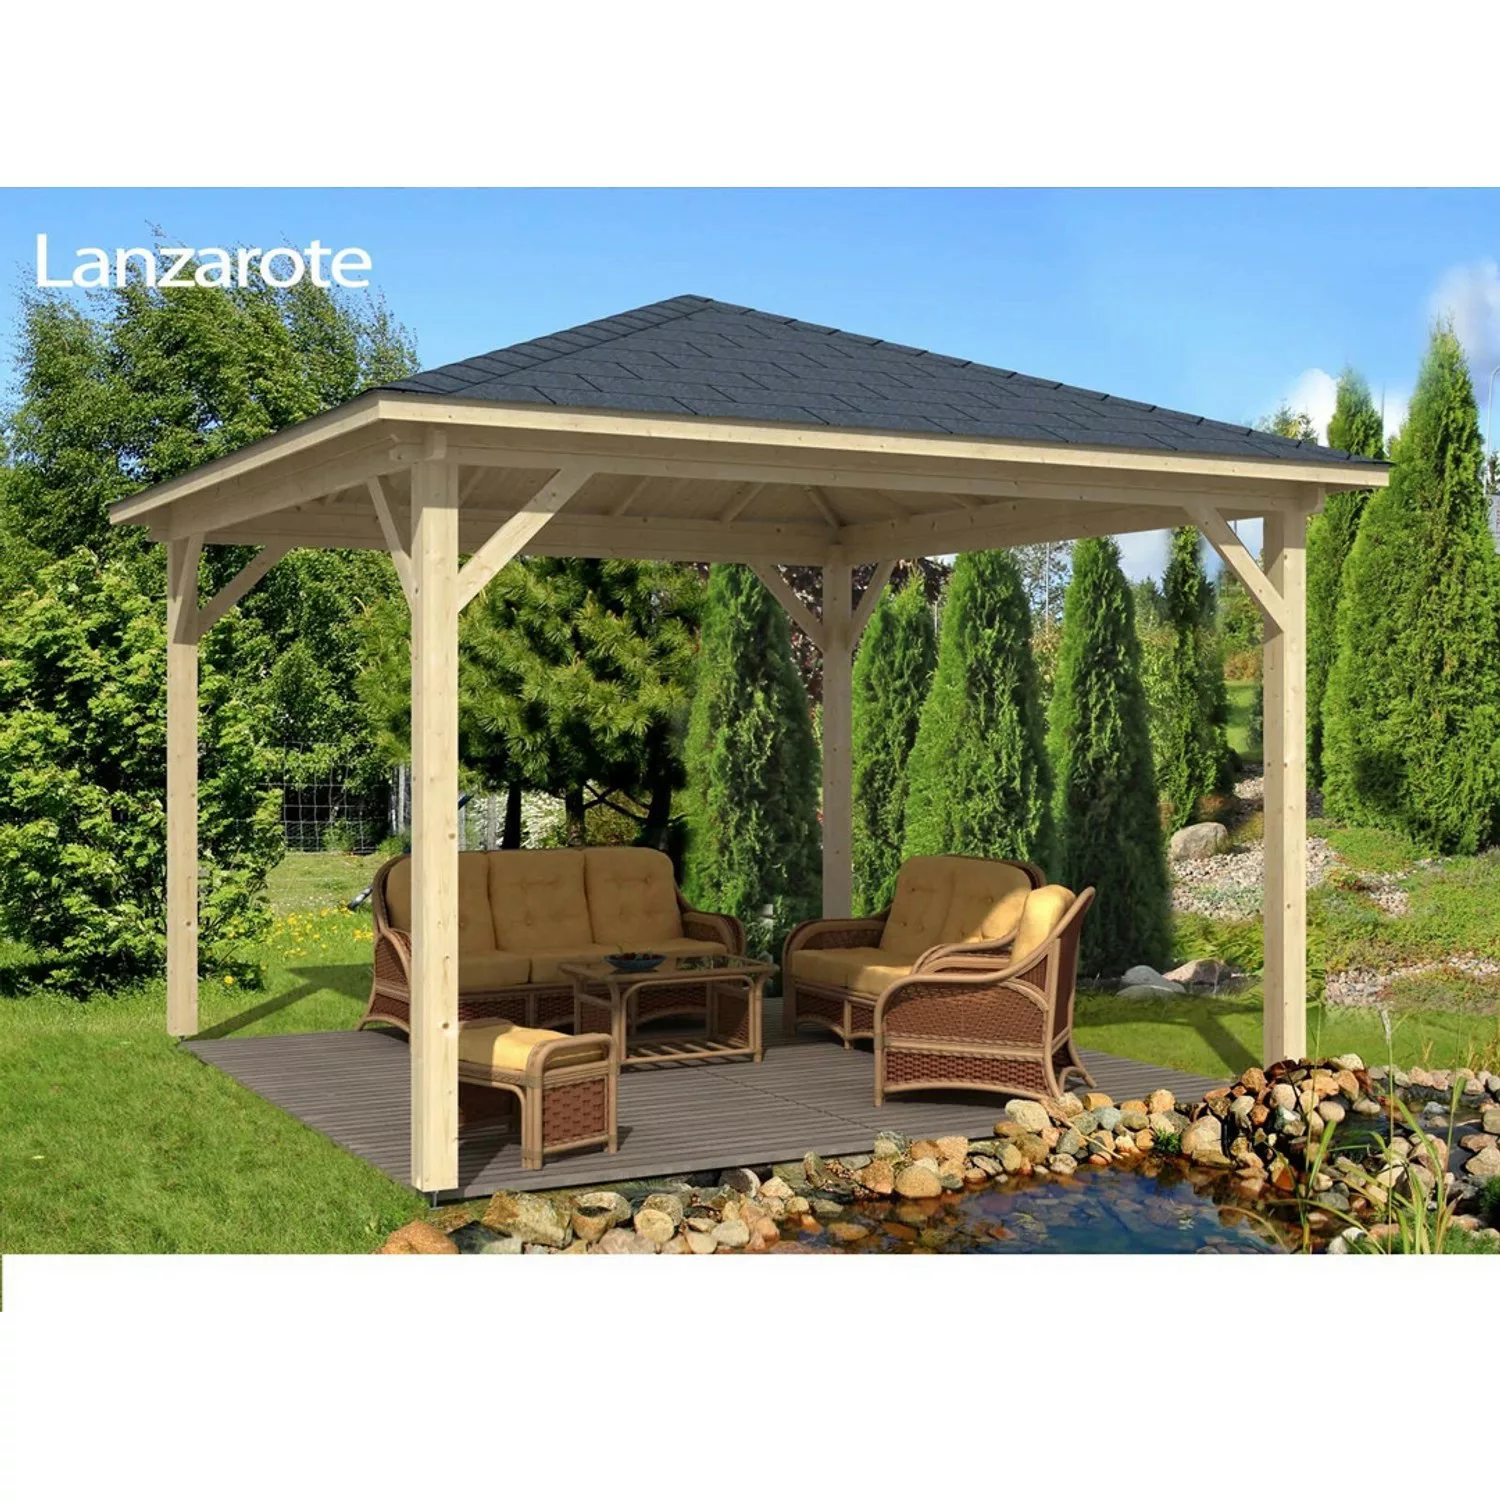 Tene Kaubandus Gartenpavillon Lanzarote Spitzdach 425 cm x 425 cm Hellbraun günstig online kaufen